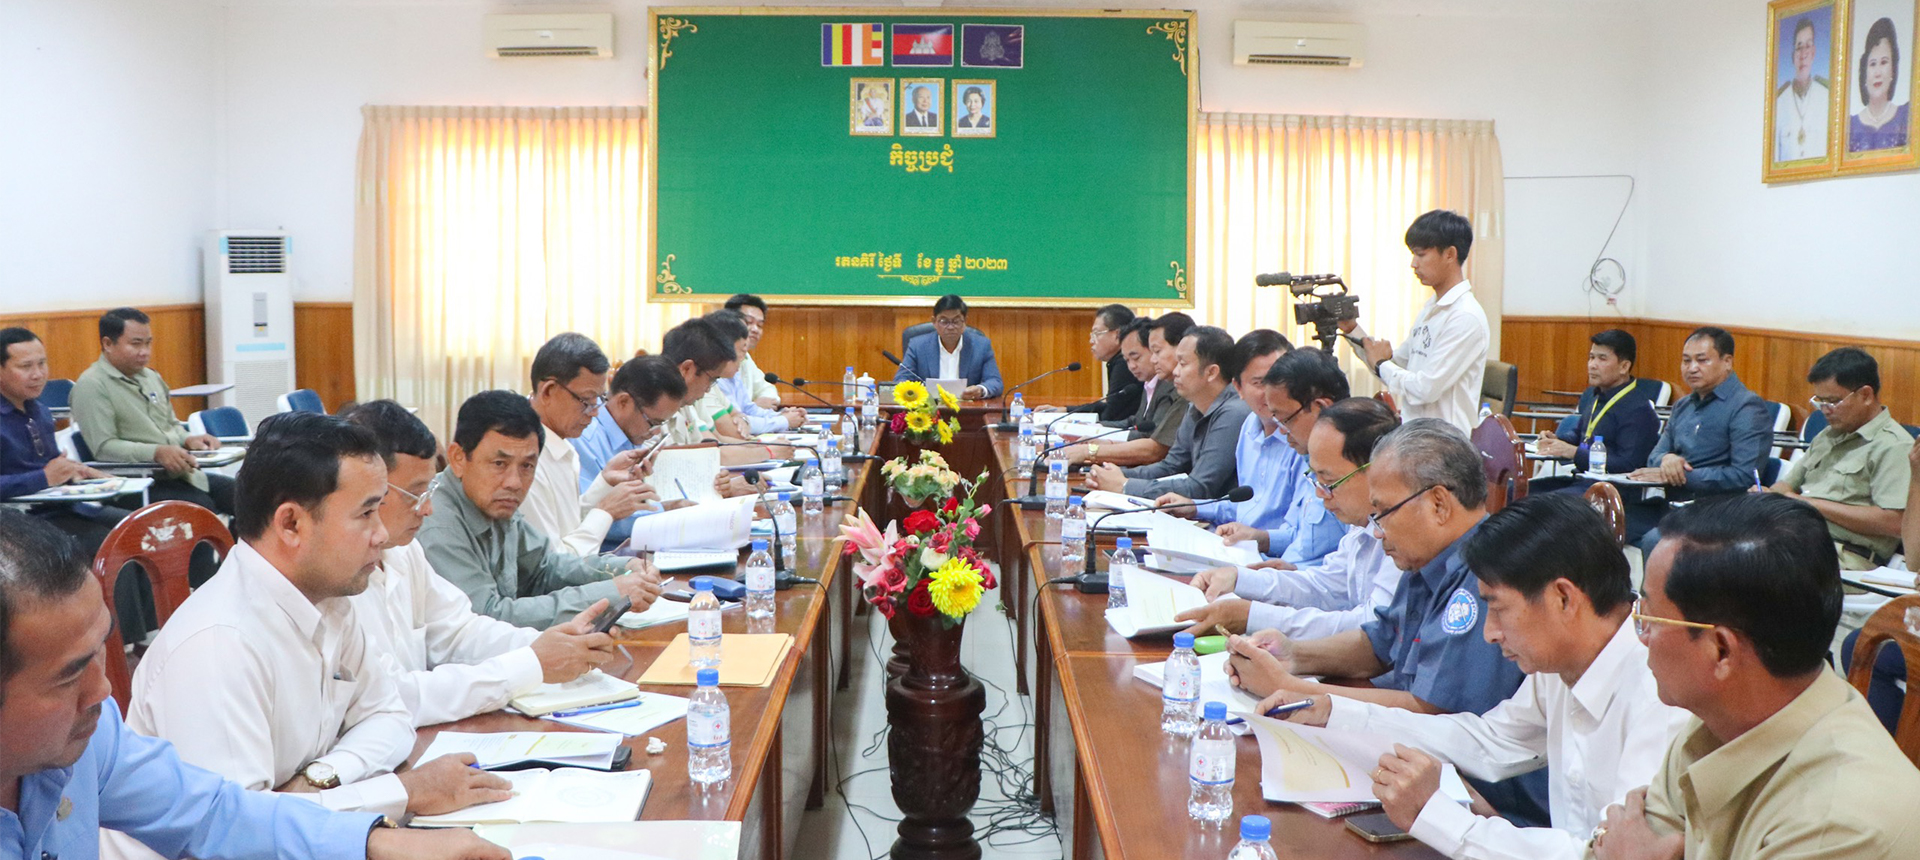 Tỉnh trưởng tỉnh Ratanakiri, Campuchia đánh giá cao quy mô đầu tư nông nghiệp của THACO AGRI